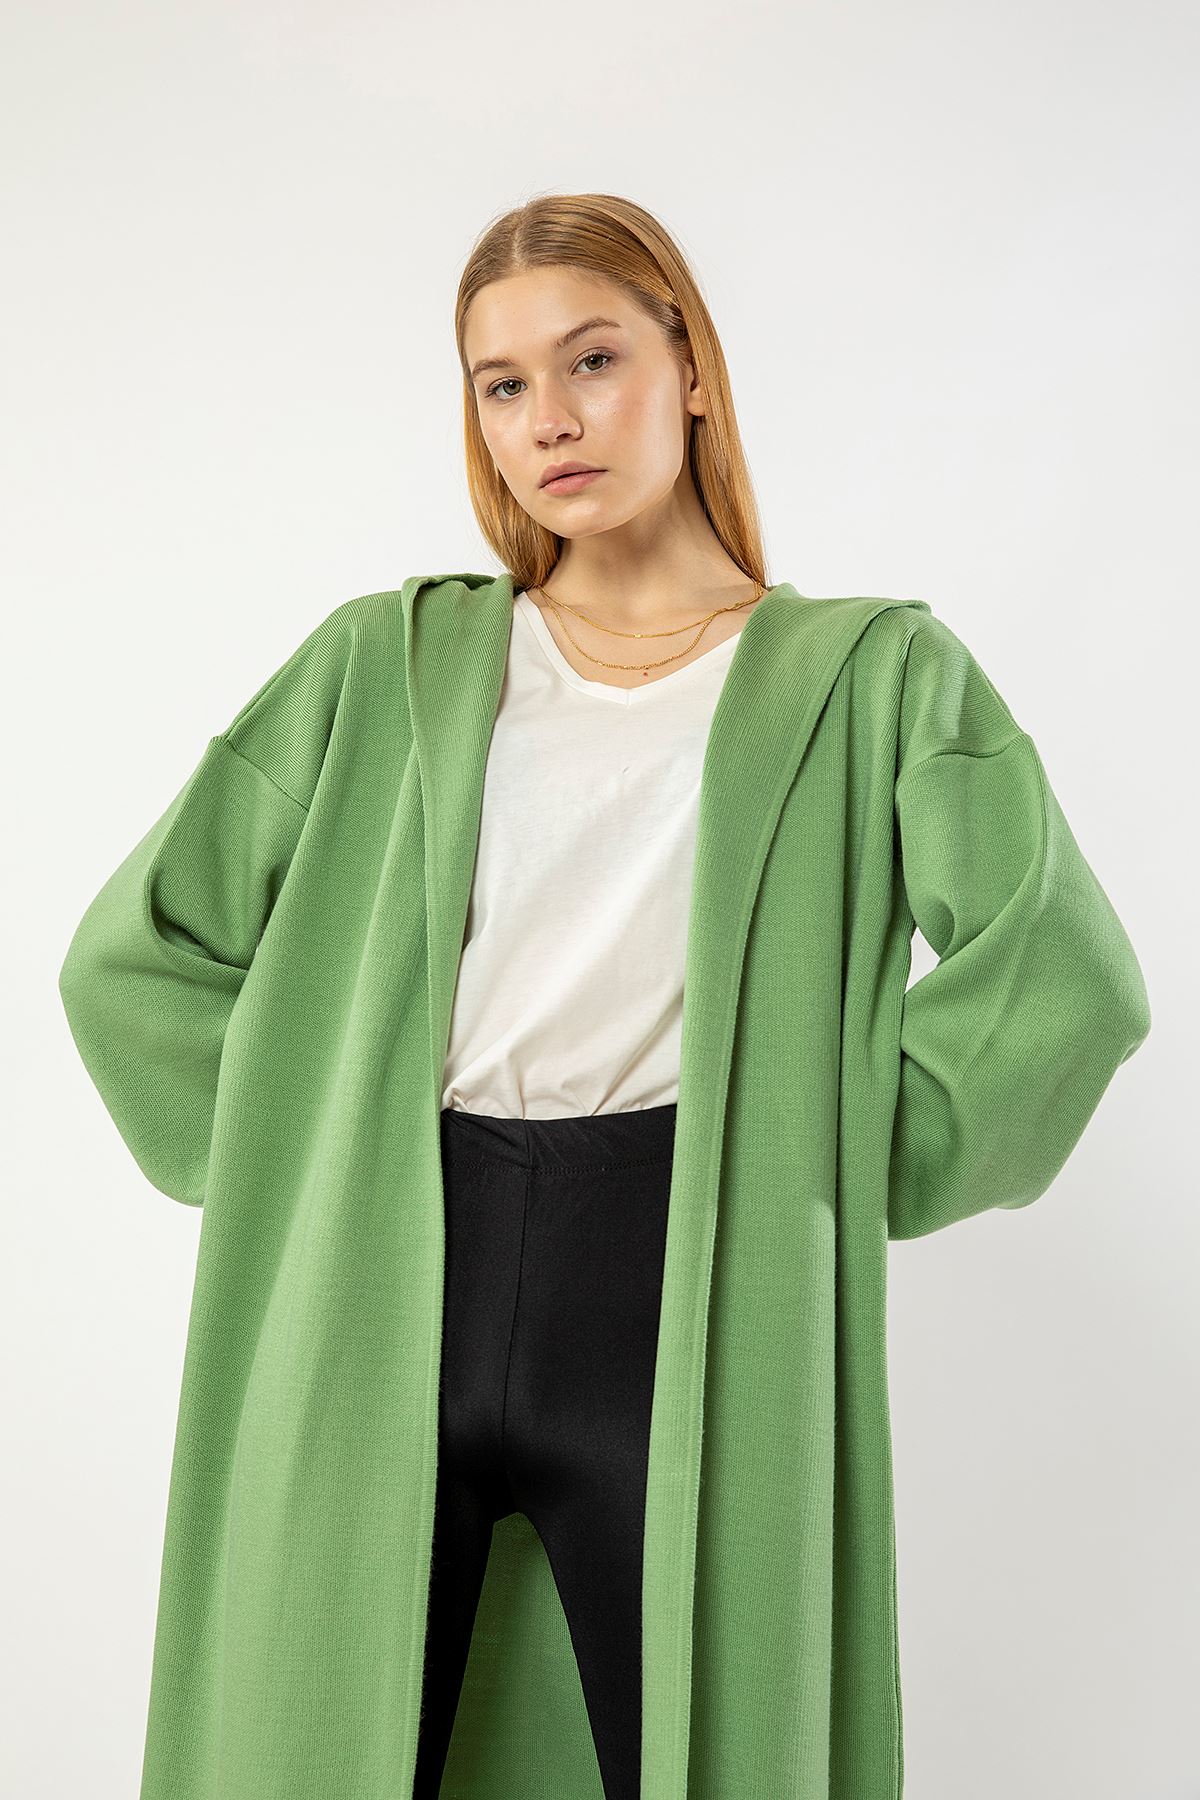 Knitwear Fabric Long Sleeve Hooded Long Oversize Women Cardigan With Belt - Mustard Green